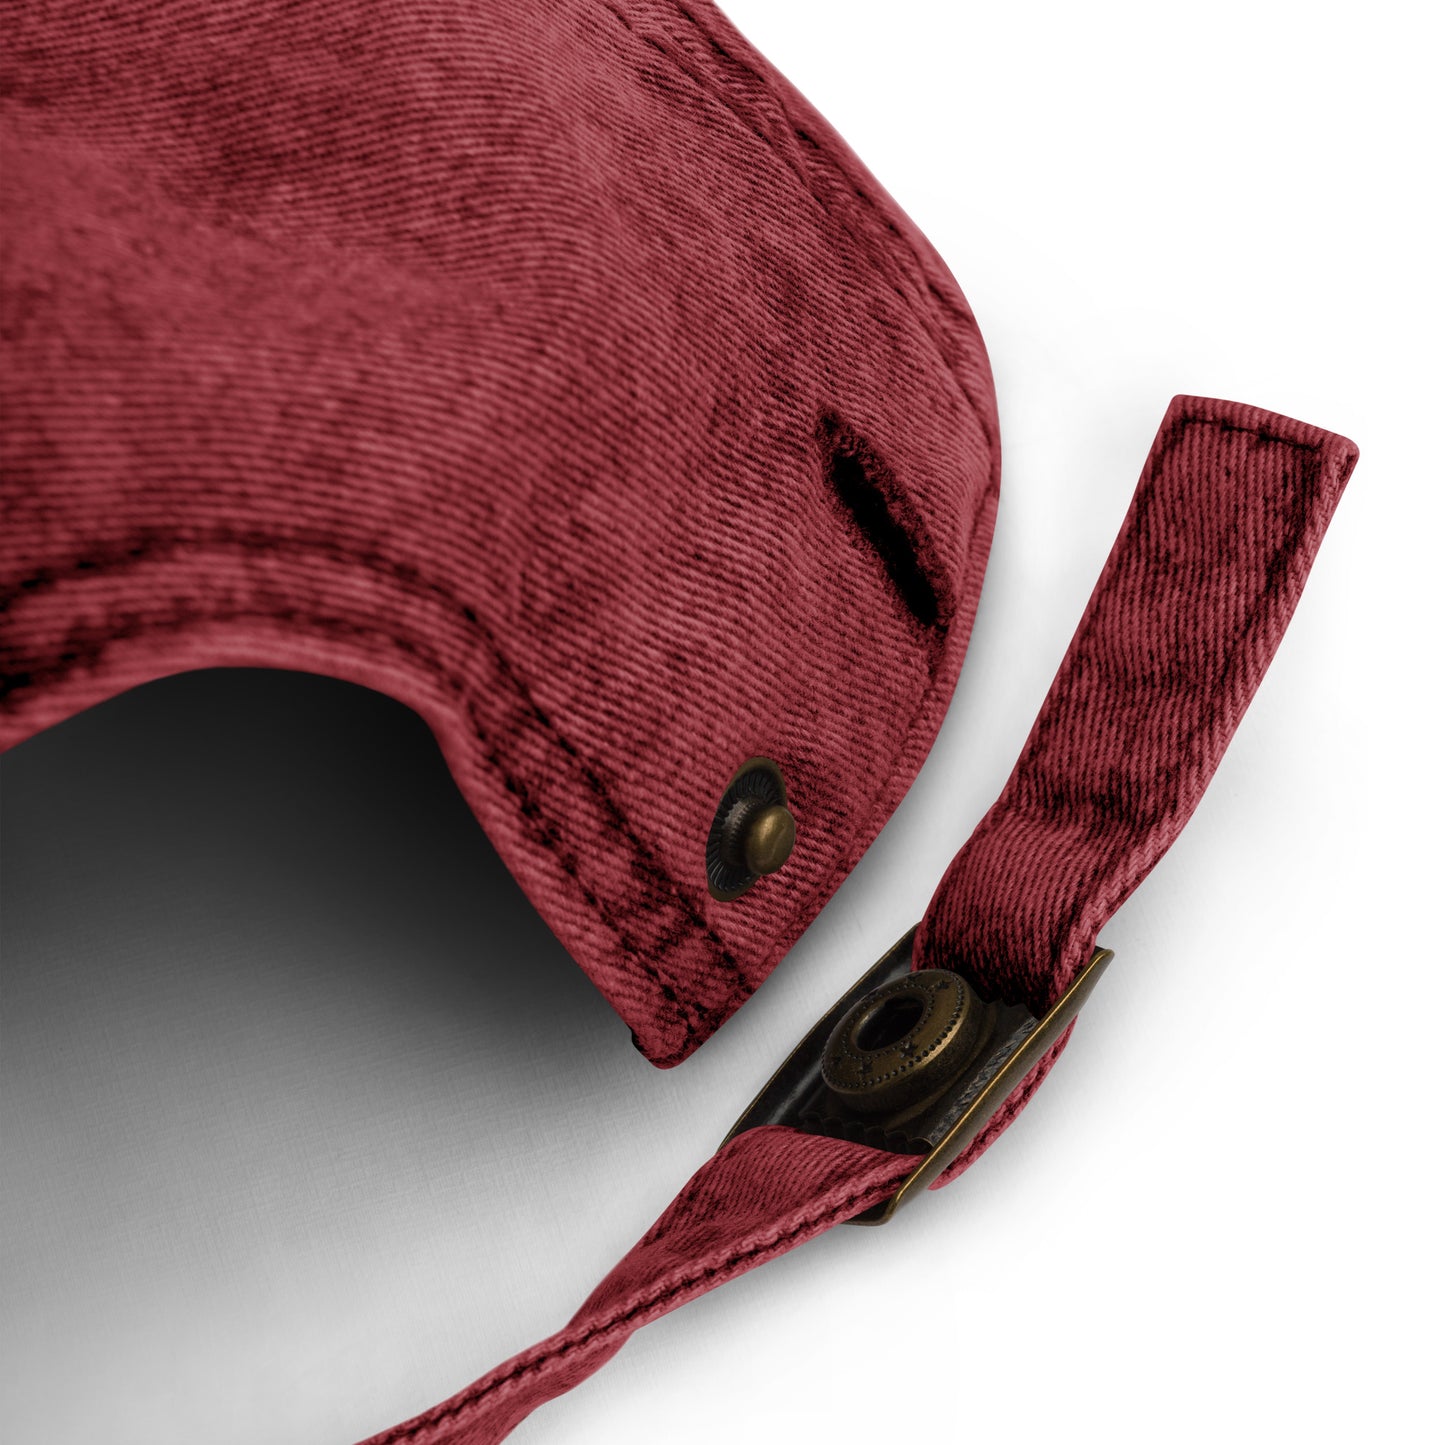 Y003 - Vintage Cotton Twill Cap (Red)